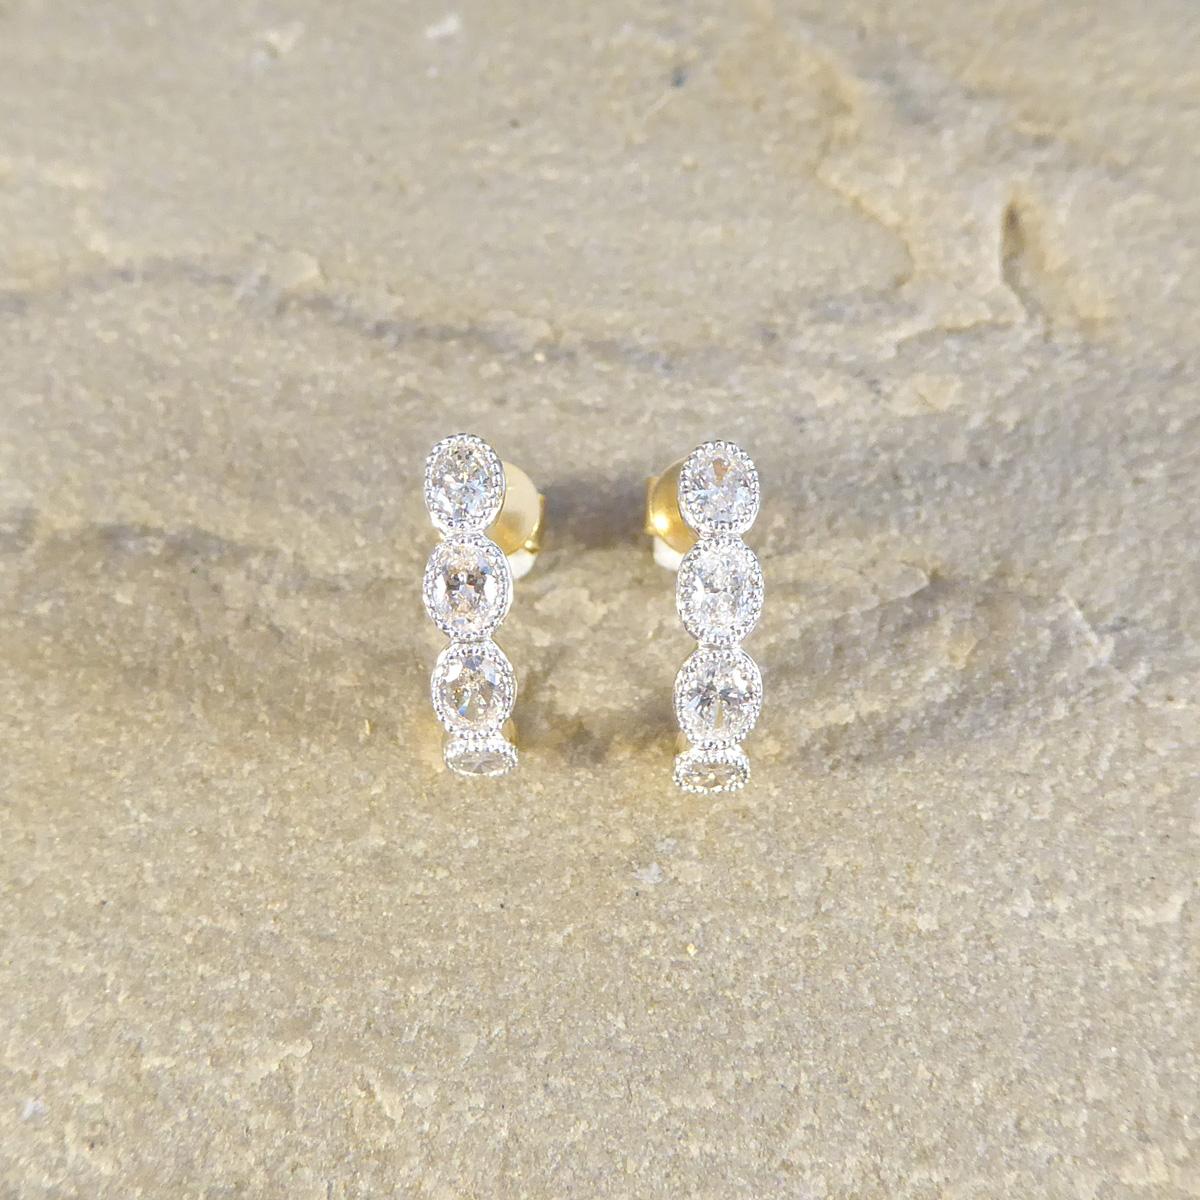 Les plus belles boucles d'oreilles serties de diamants étincelants. Chaque demi-arceau est serti de quatre diamants de taille ovale de couleur et de pureté égales dans une monture en or blanc 18ct à mille grains pour mettre en valeur les pierres,